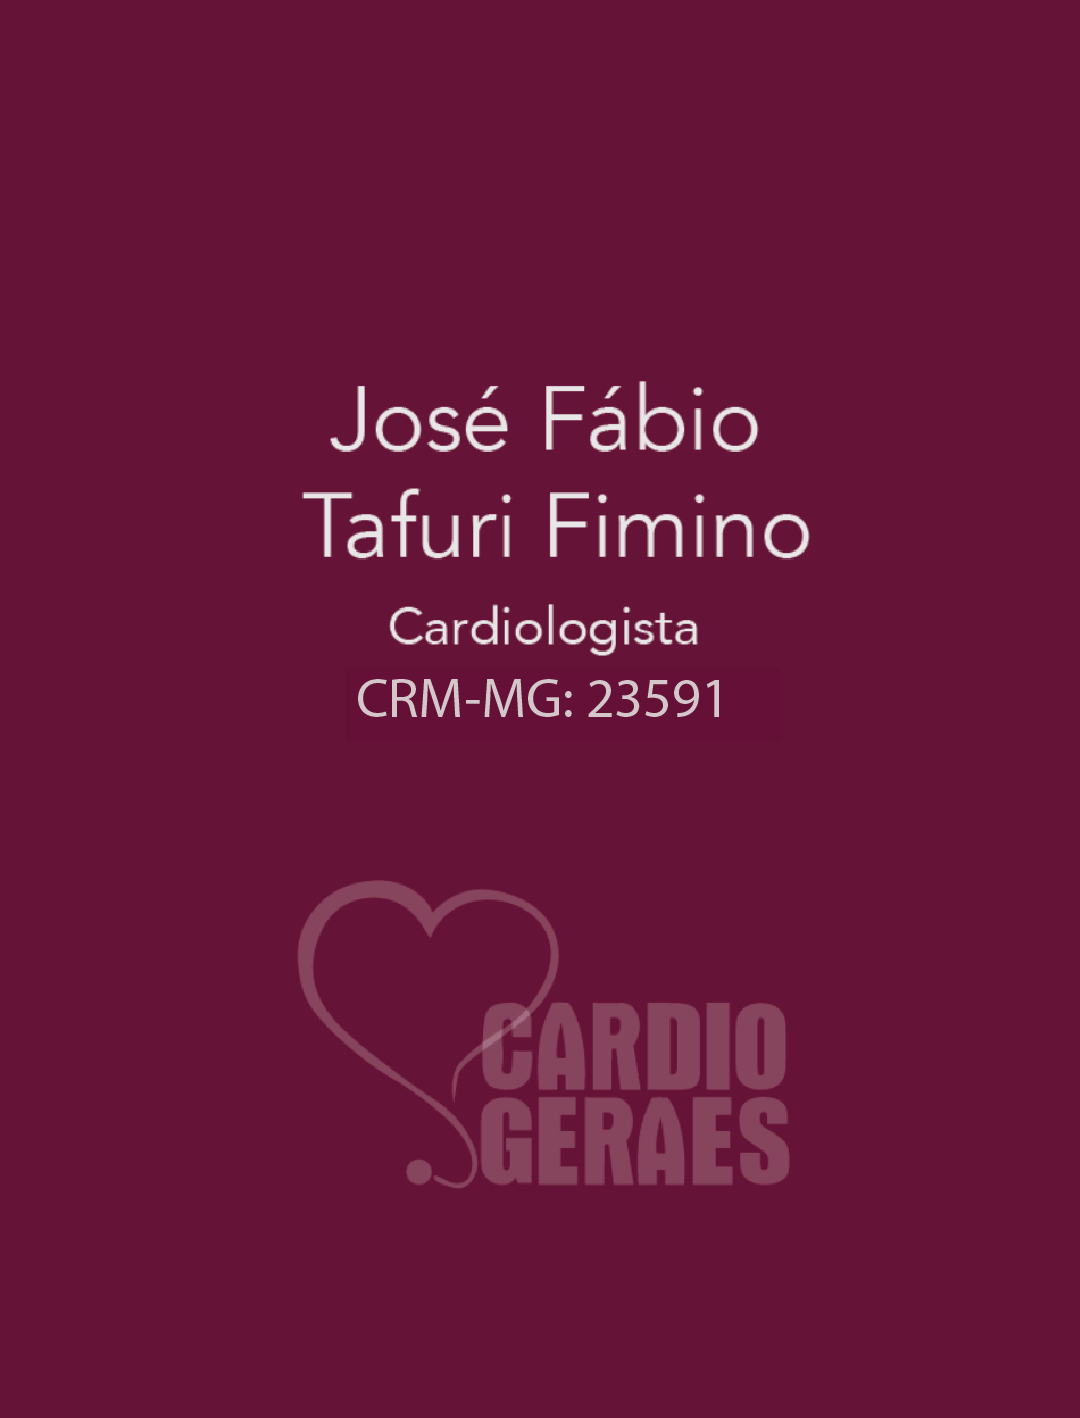 José Fábio Tafuri Fimino